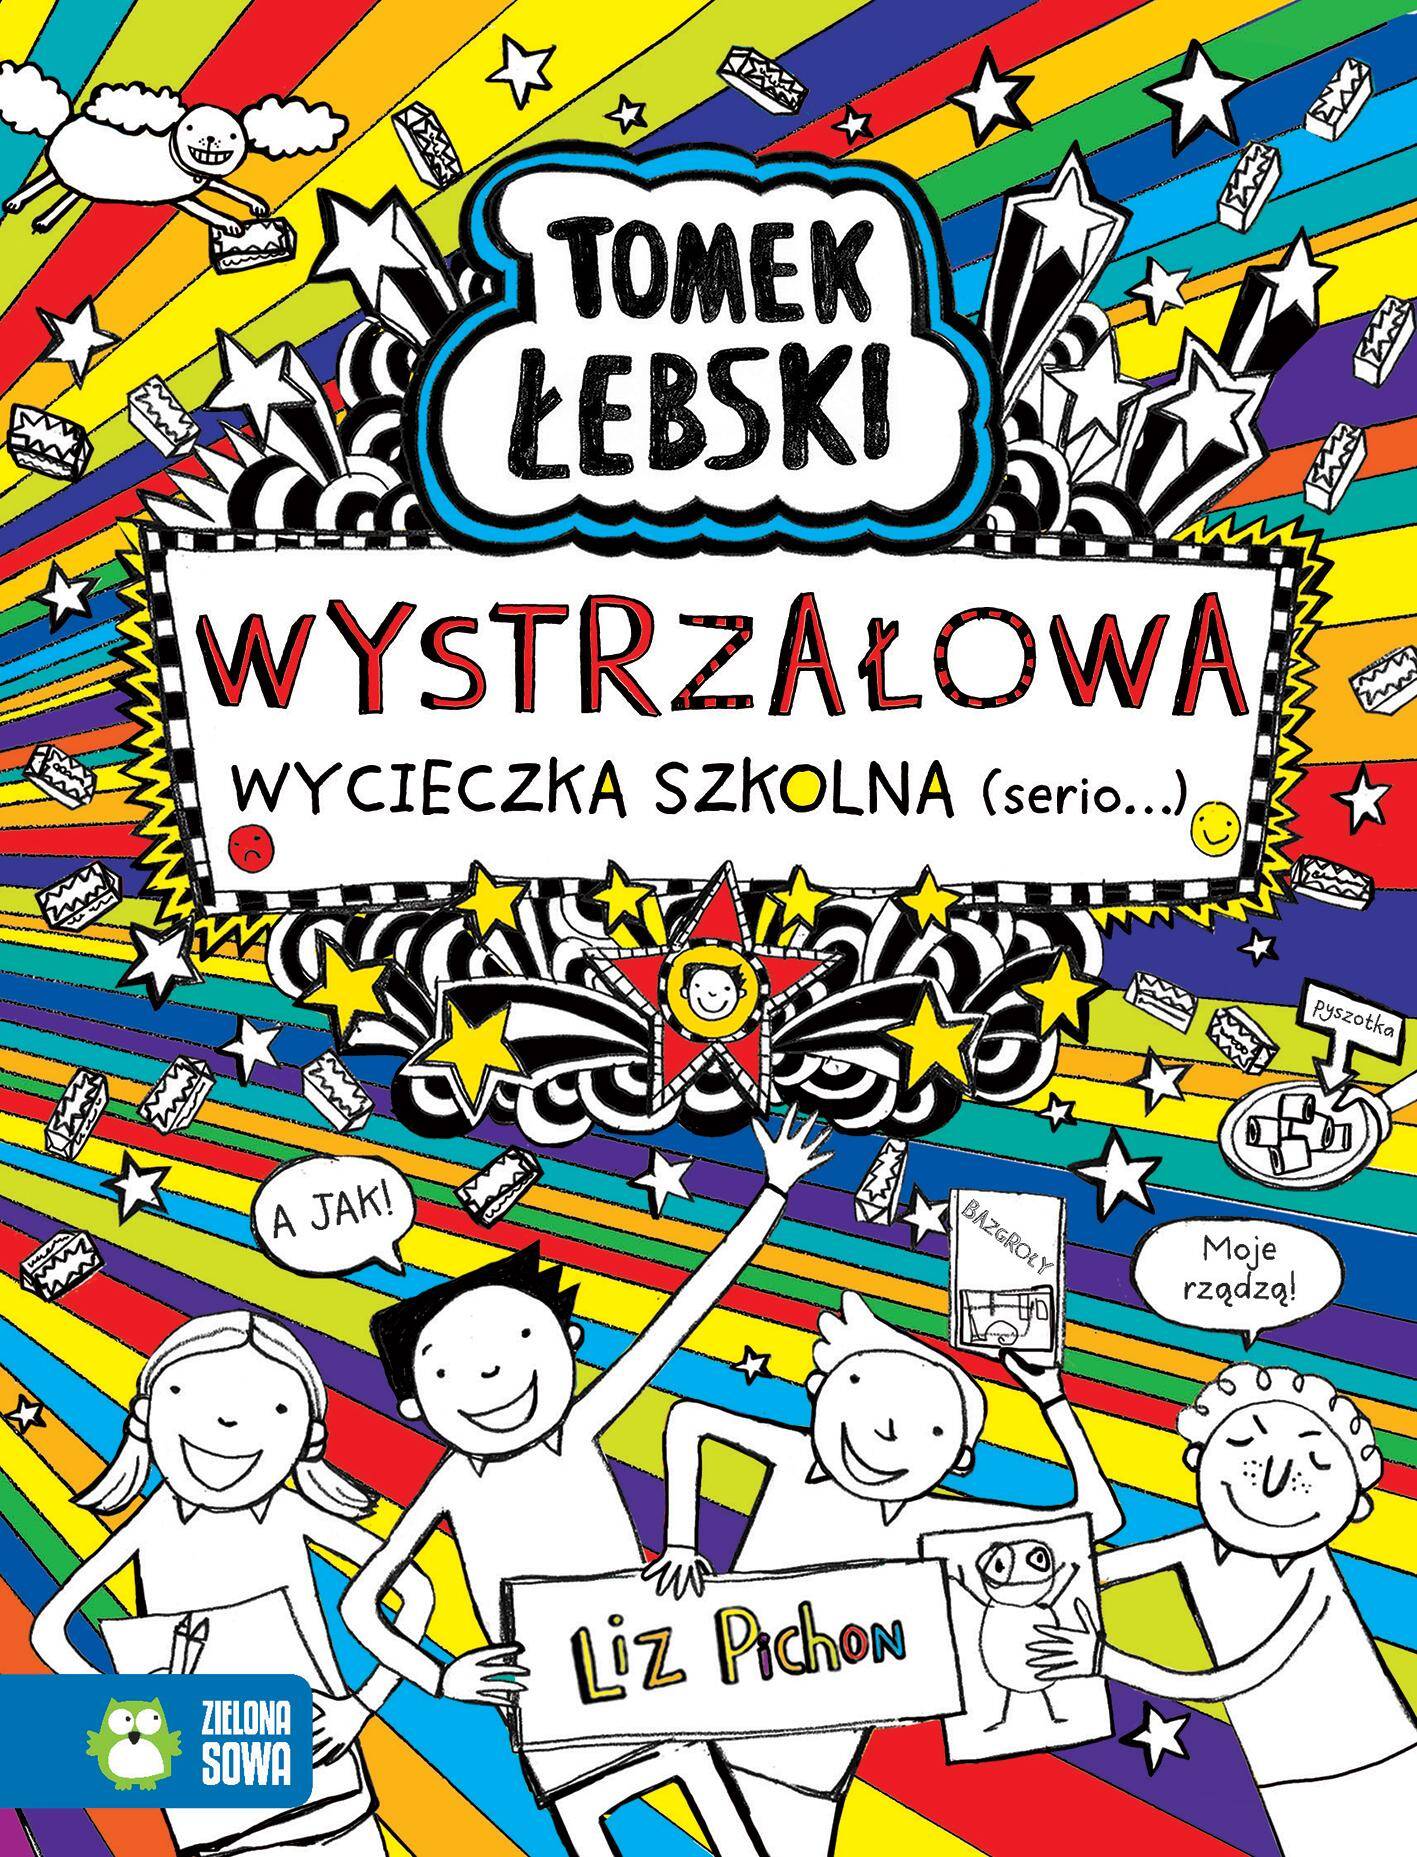 Wystrzałowa wycieczka szkolna (serio) Tomek Łebski